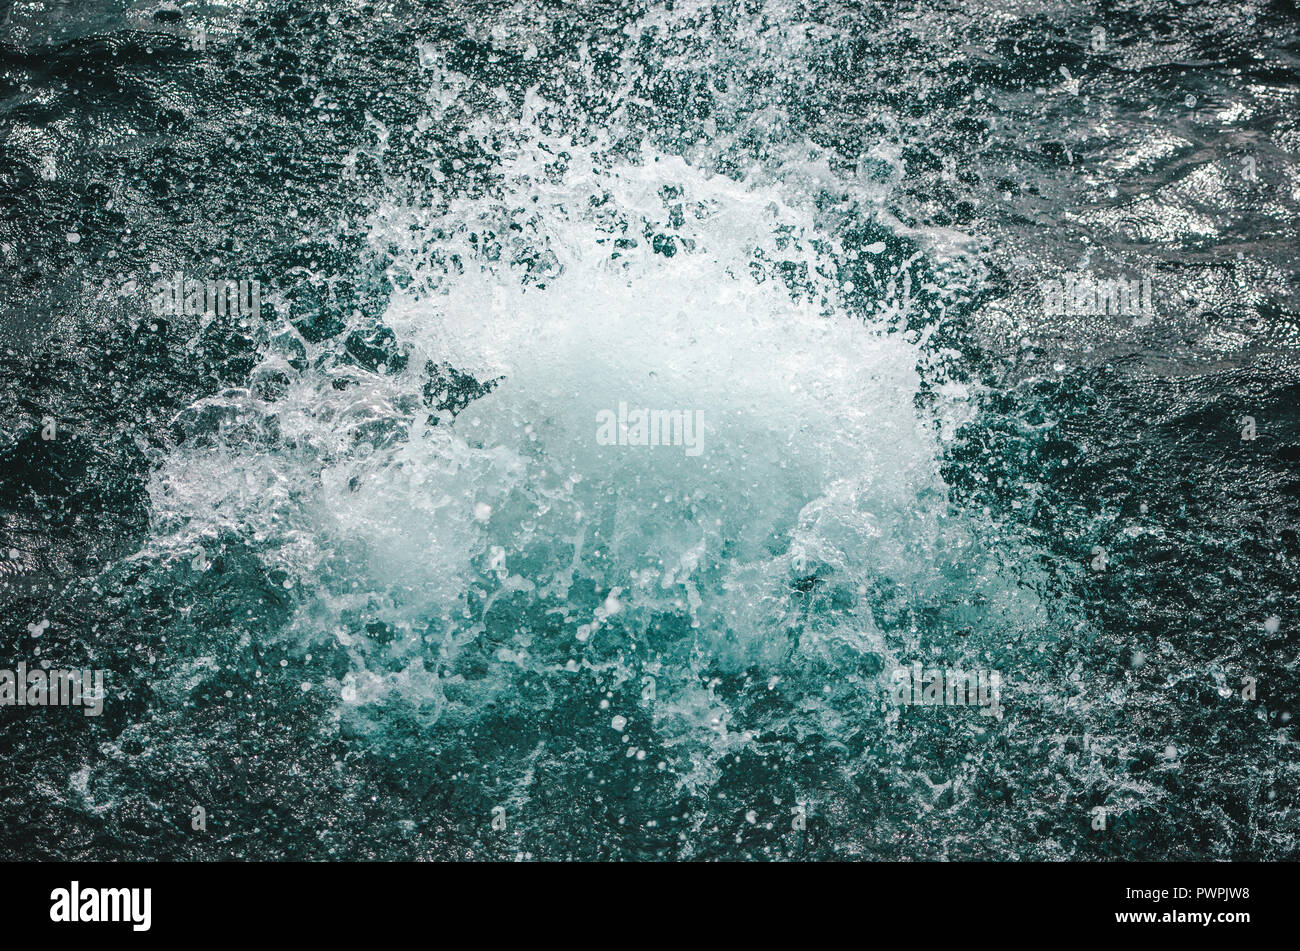 Splash come persona salti in acque turchesi del Mar dei Caraibi Foto Stock